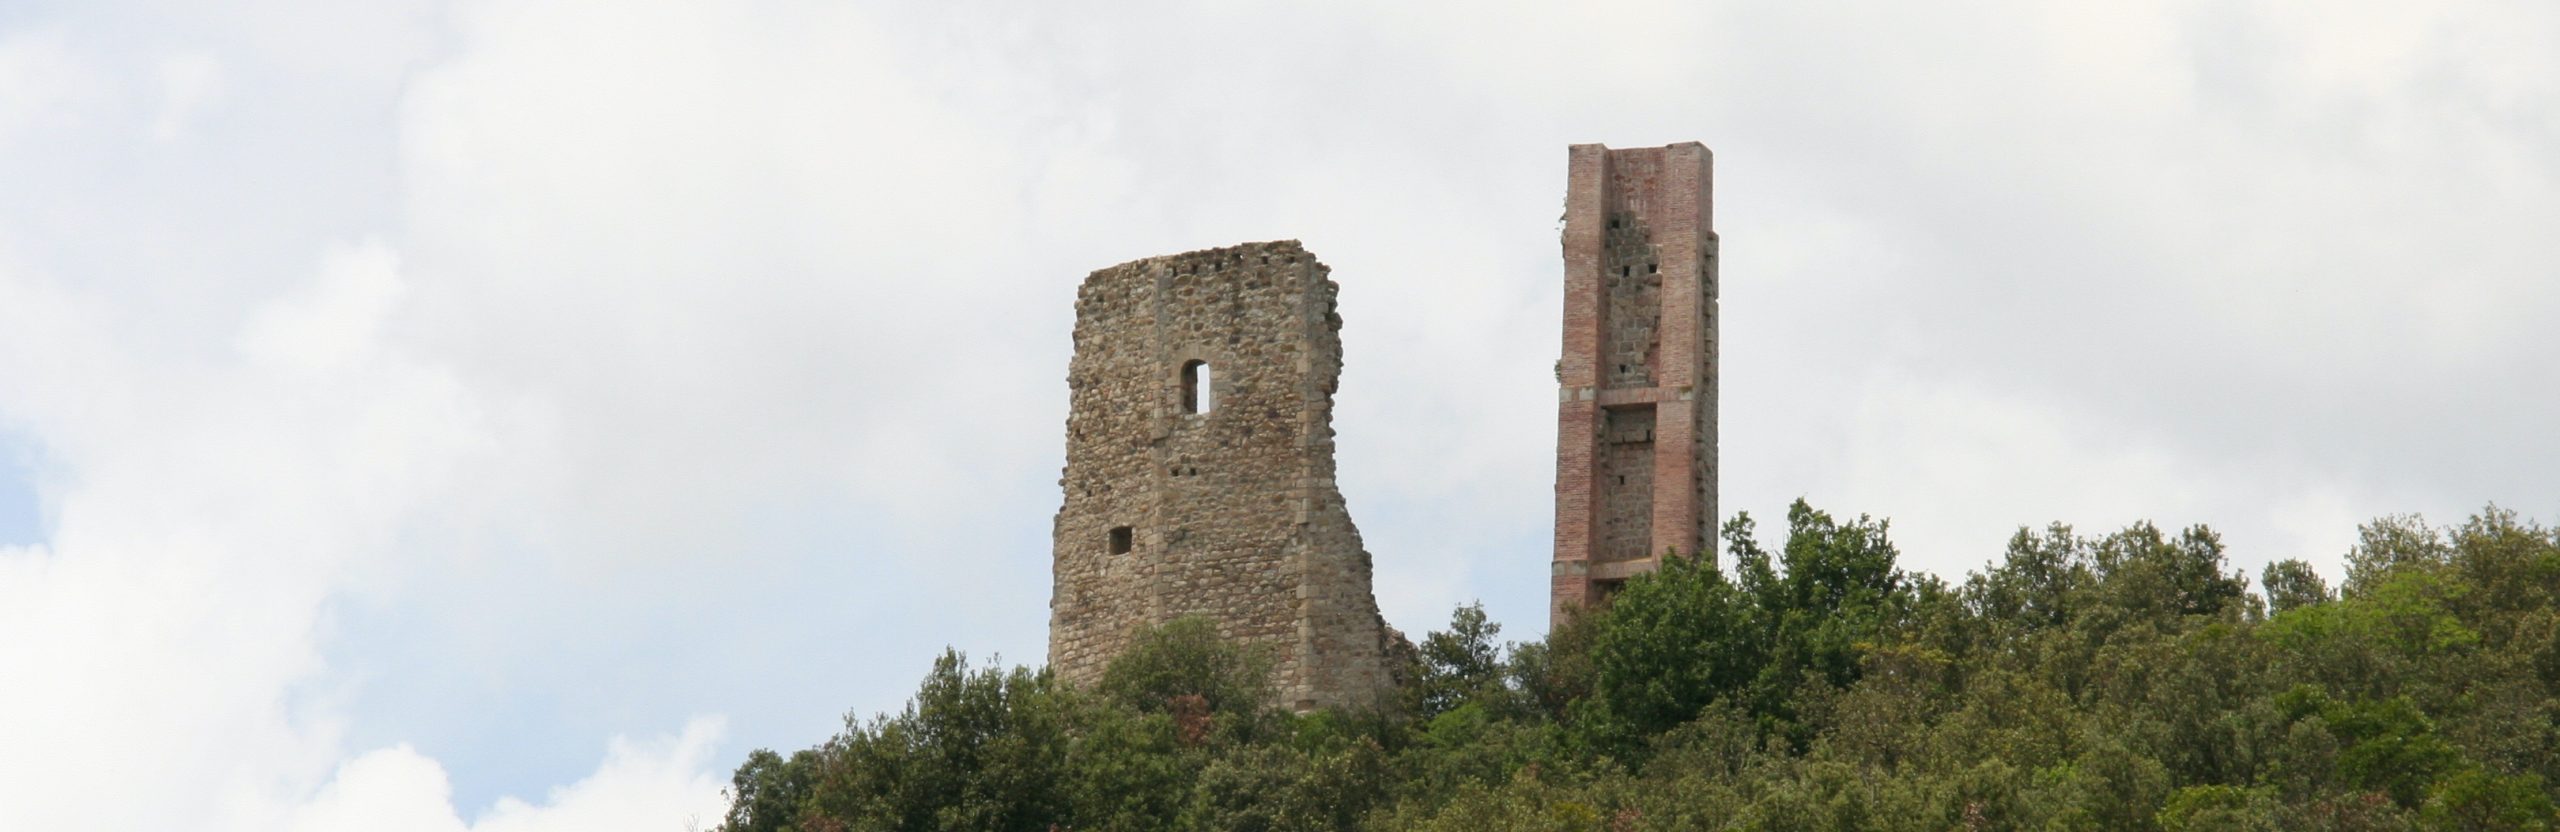 Castello di Crevole